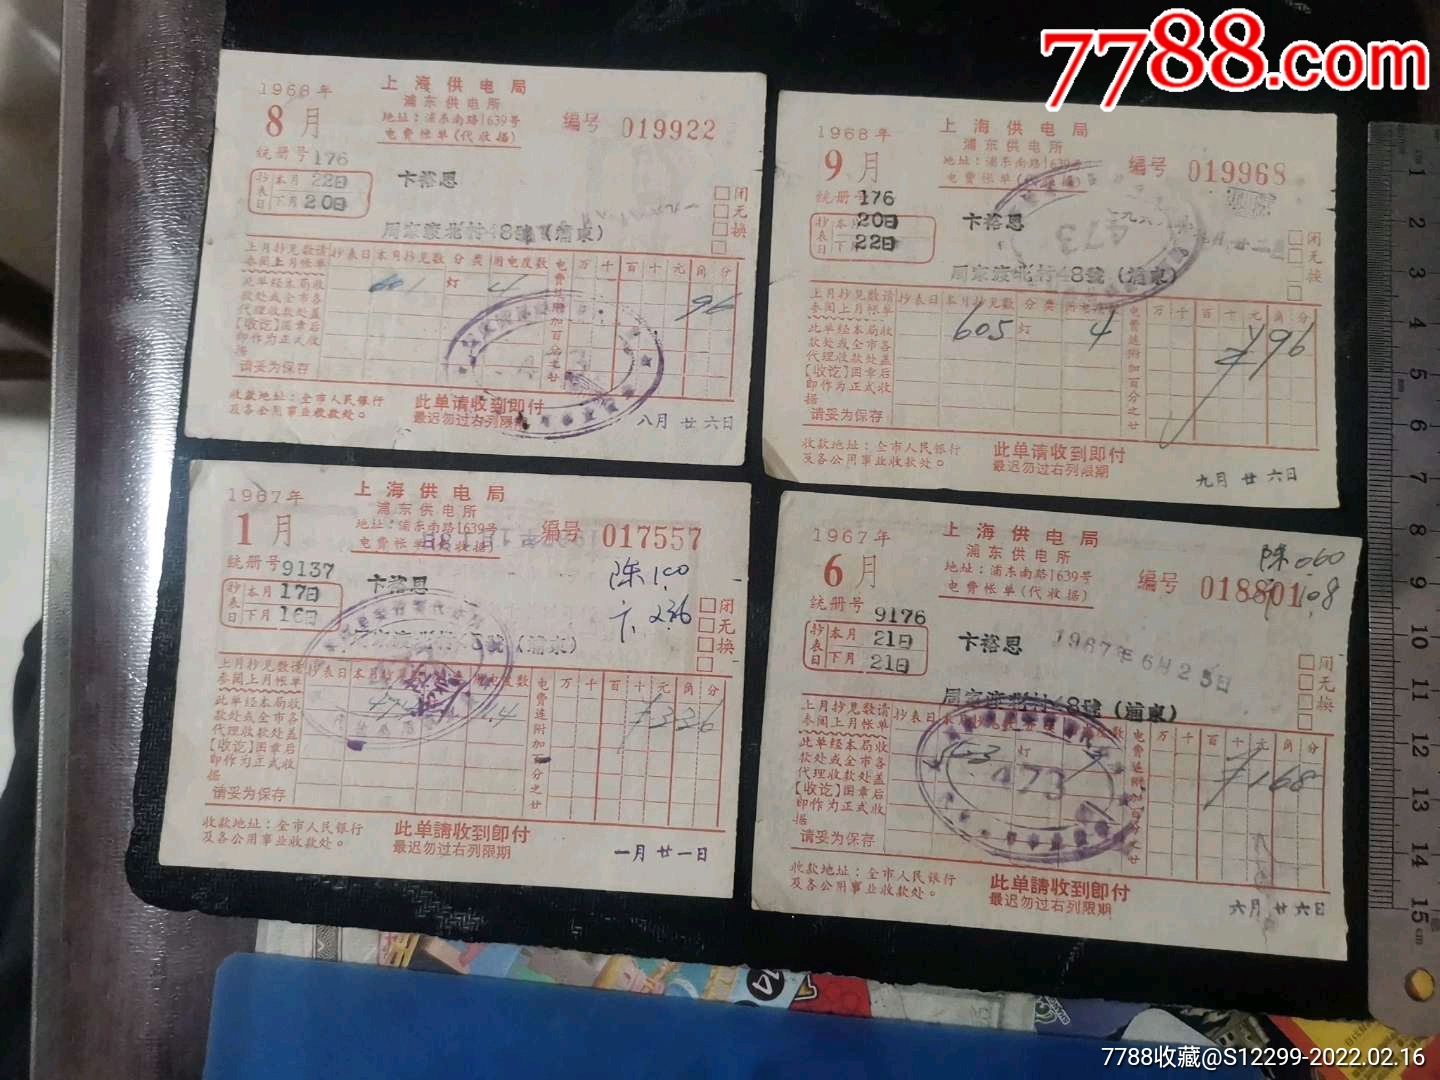 上海供电局浦东供电所电费账单收据4张毛像语录林题